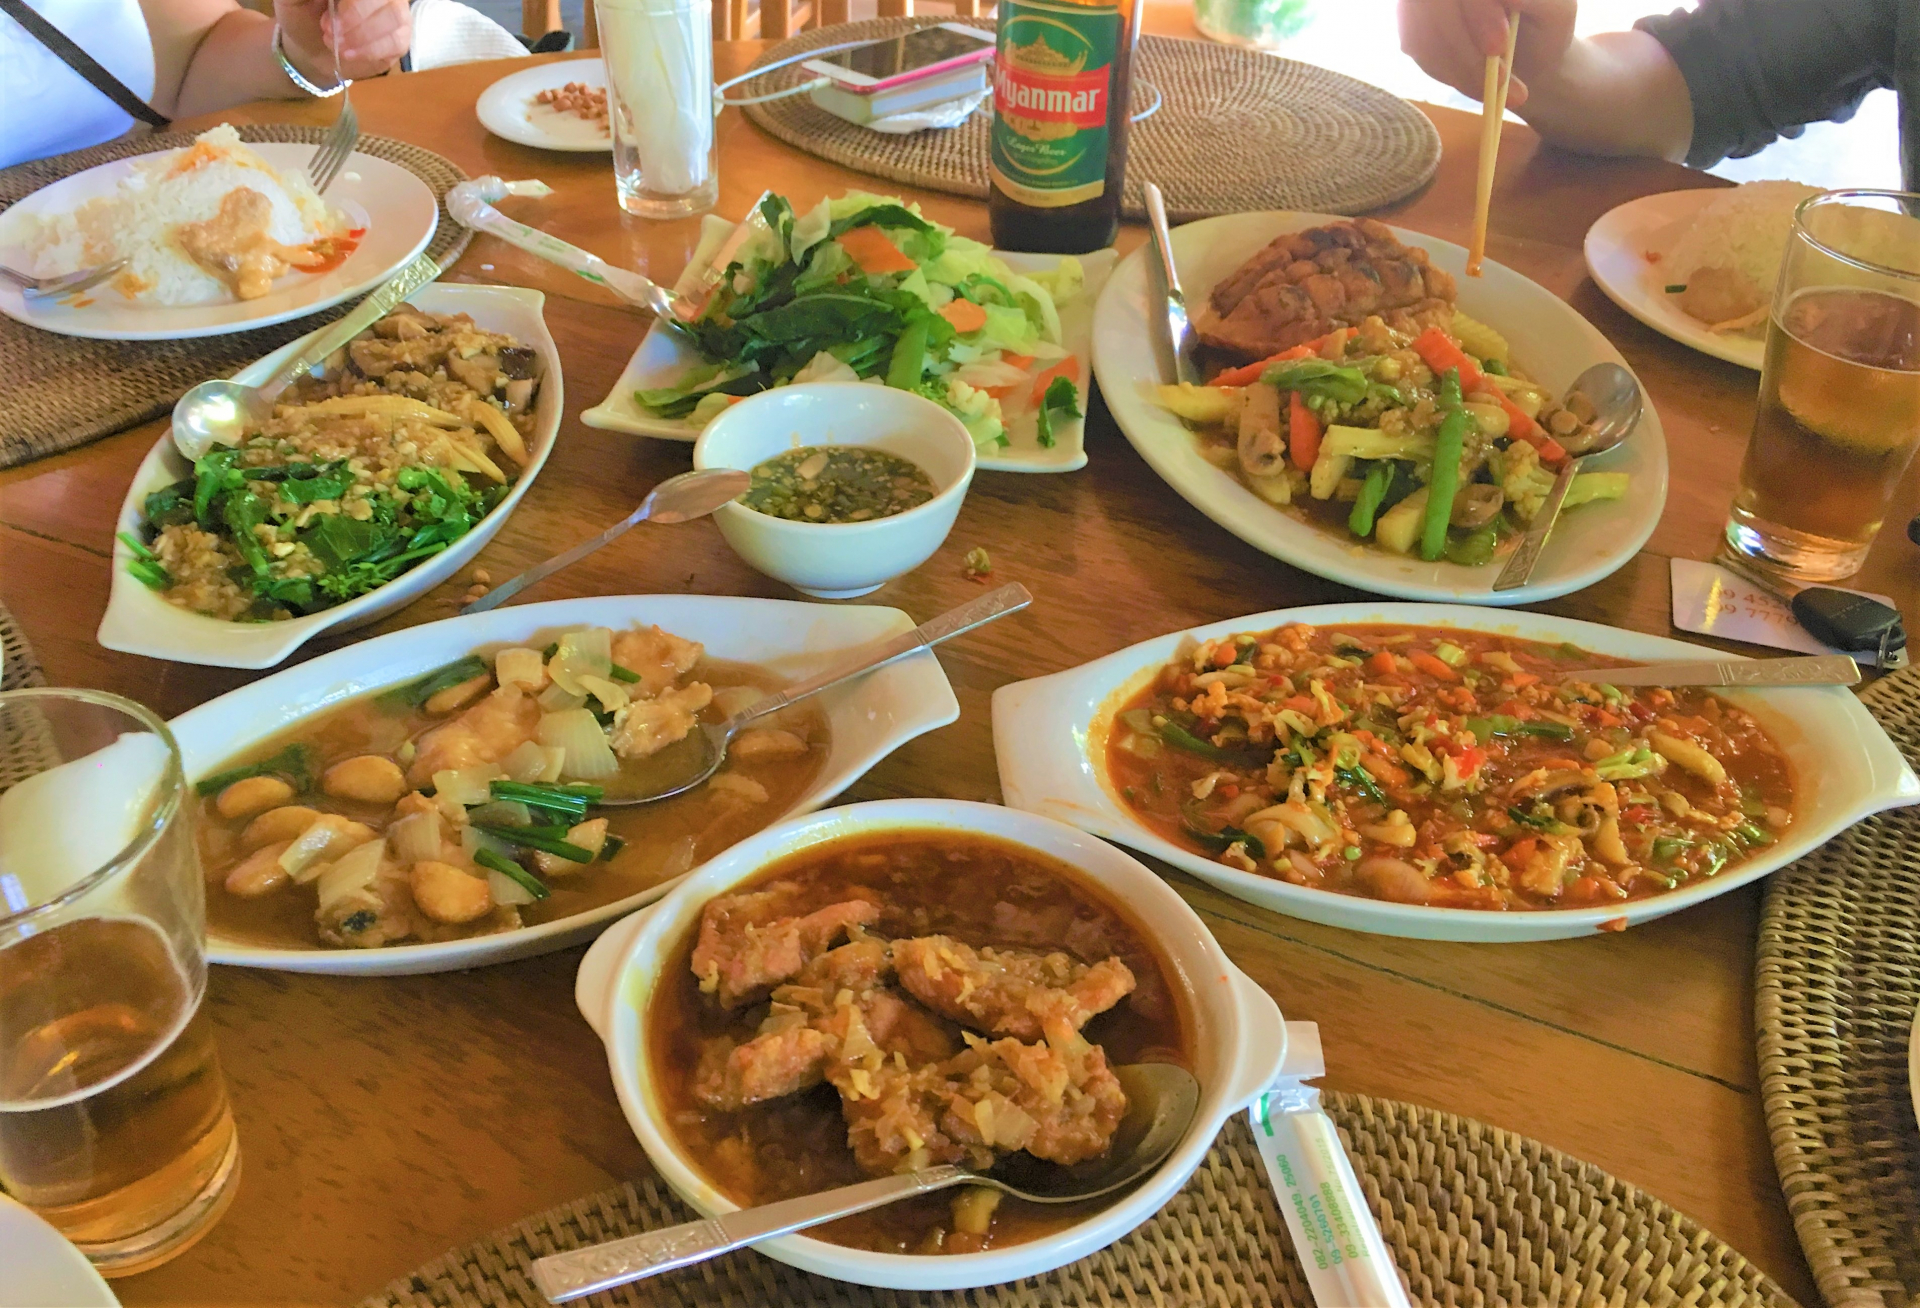 Ẩm thực Myanmar là các món cà ri, các món ăn được nêm nếm đậm, cay và nồng.